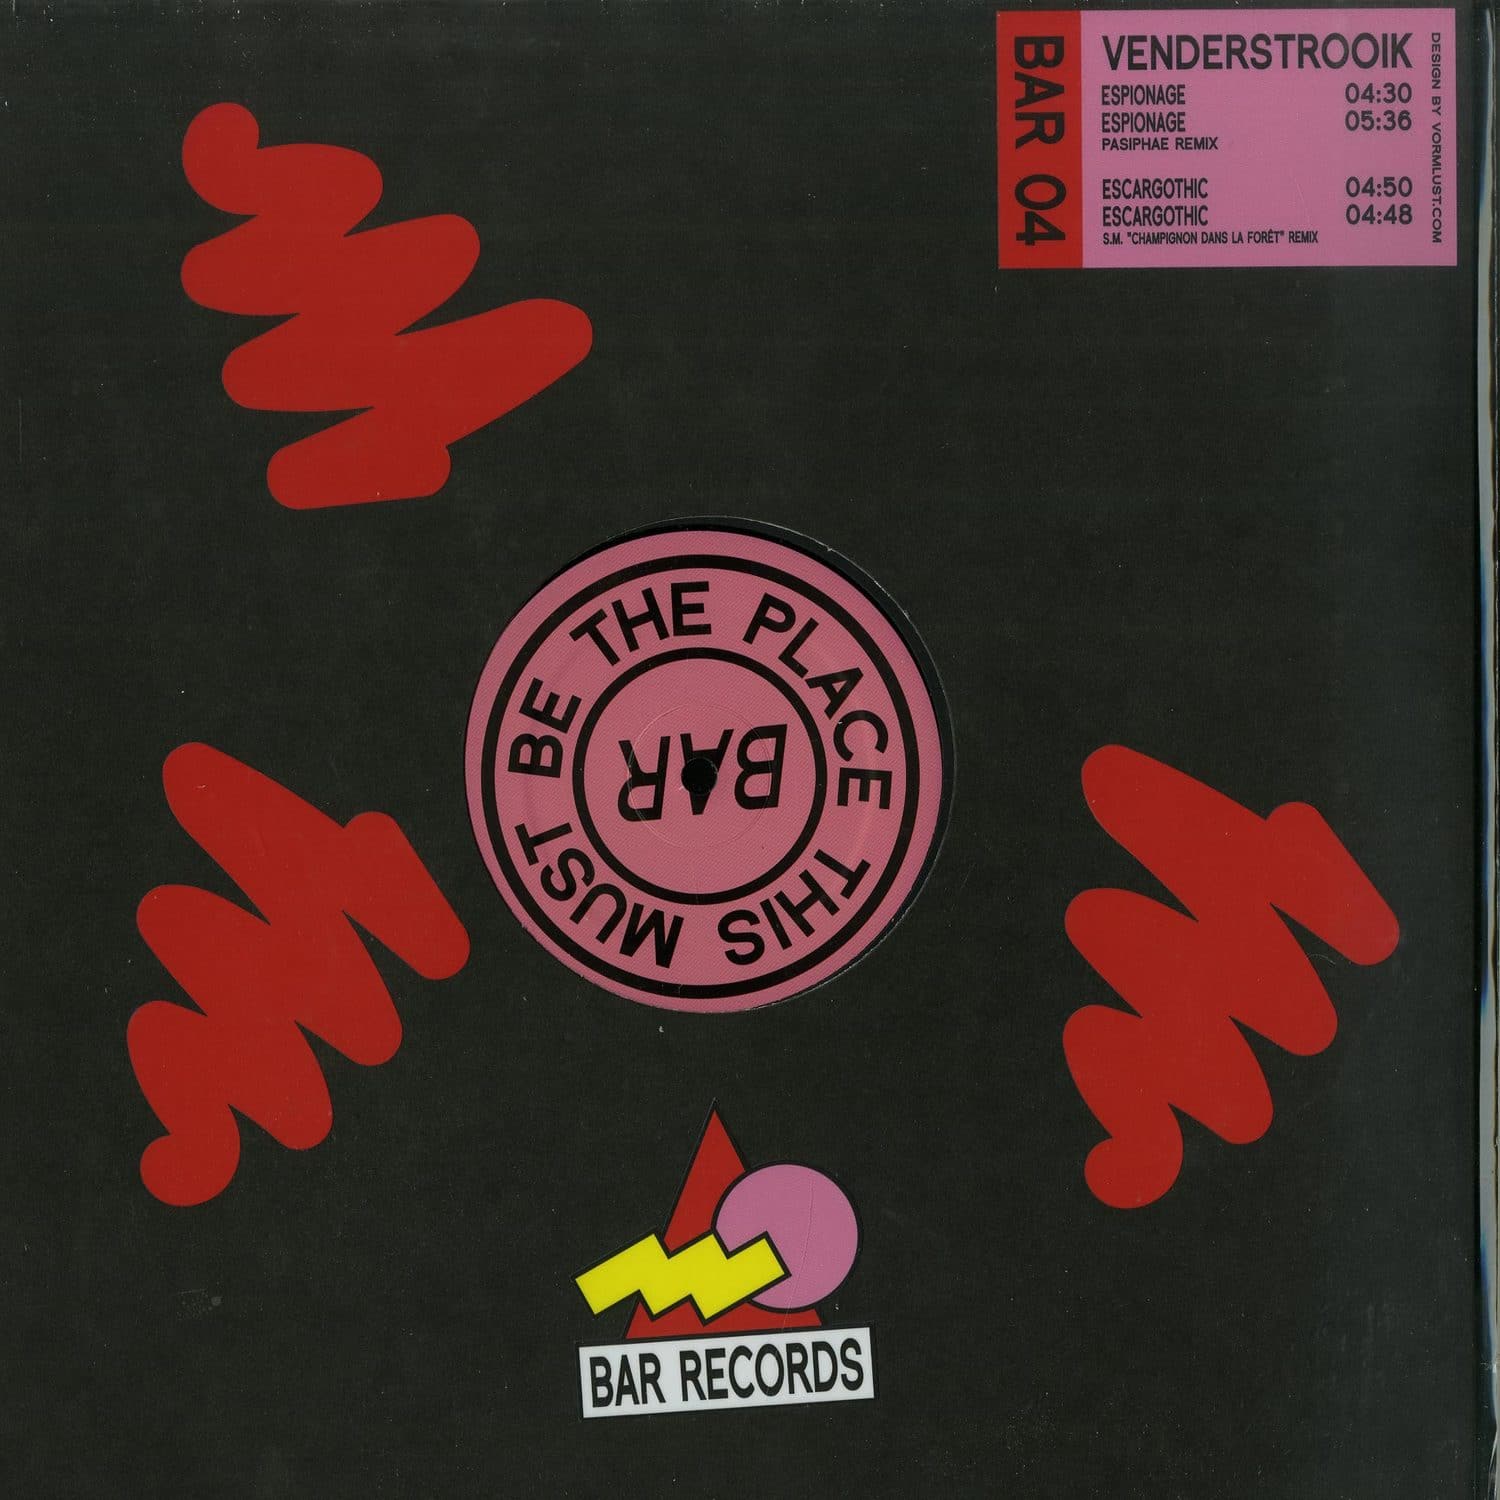 Venderstrooik - BAR RECORDS 04